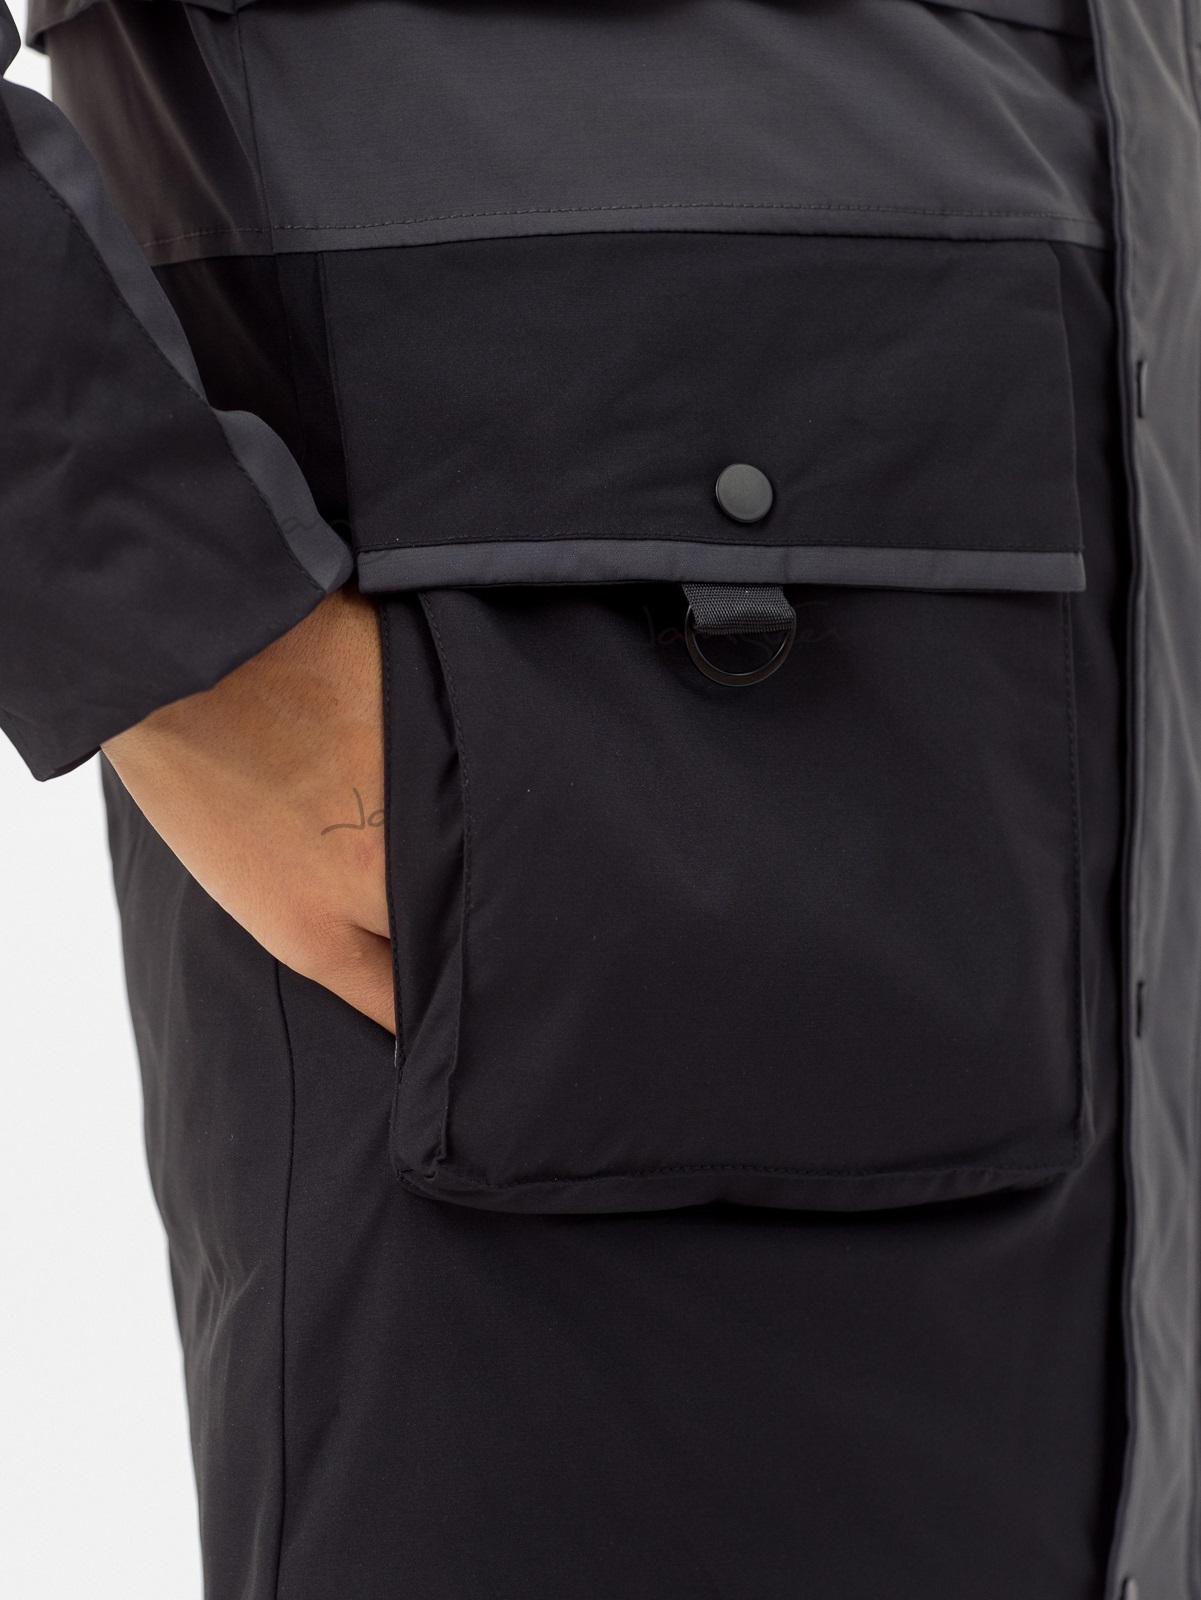 Куртка д/м био-пух серый-чёрный. Фото N6